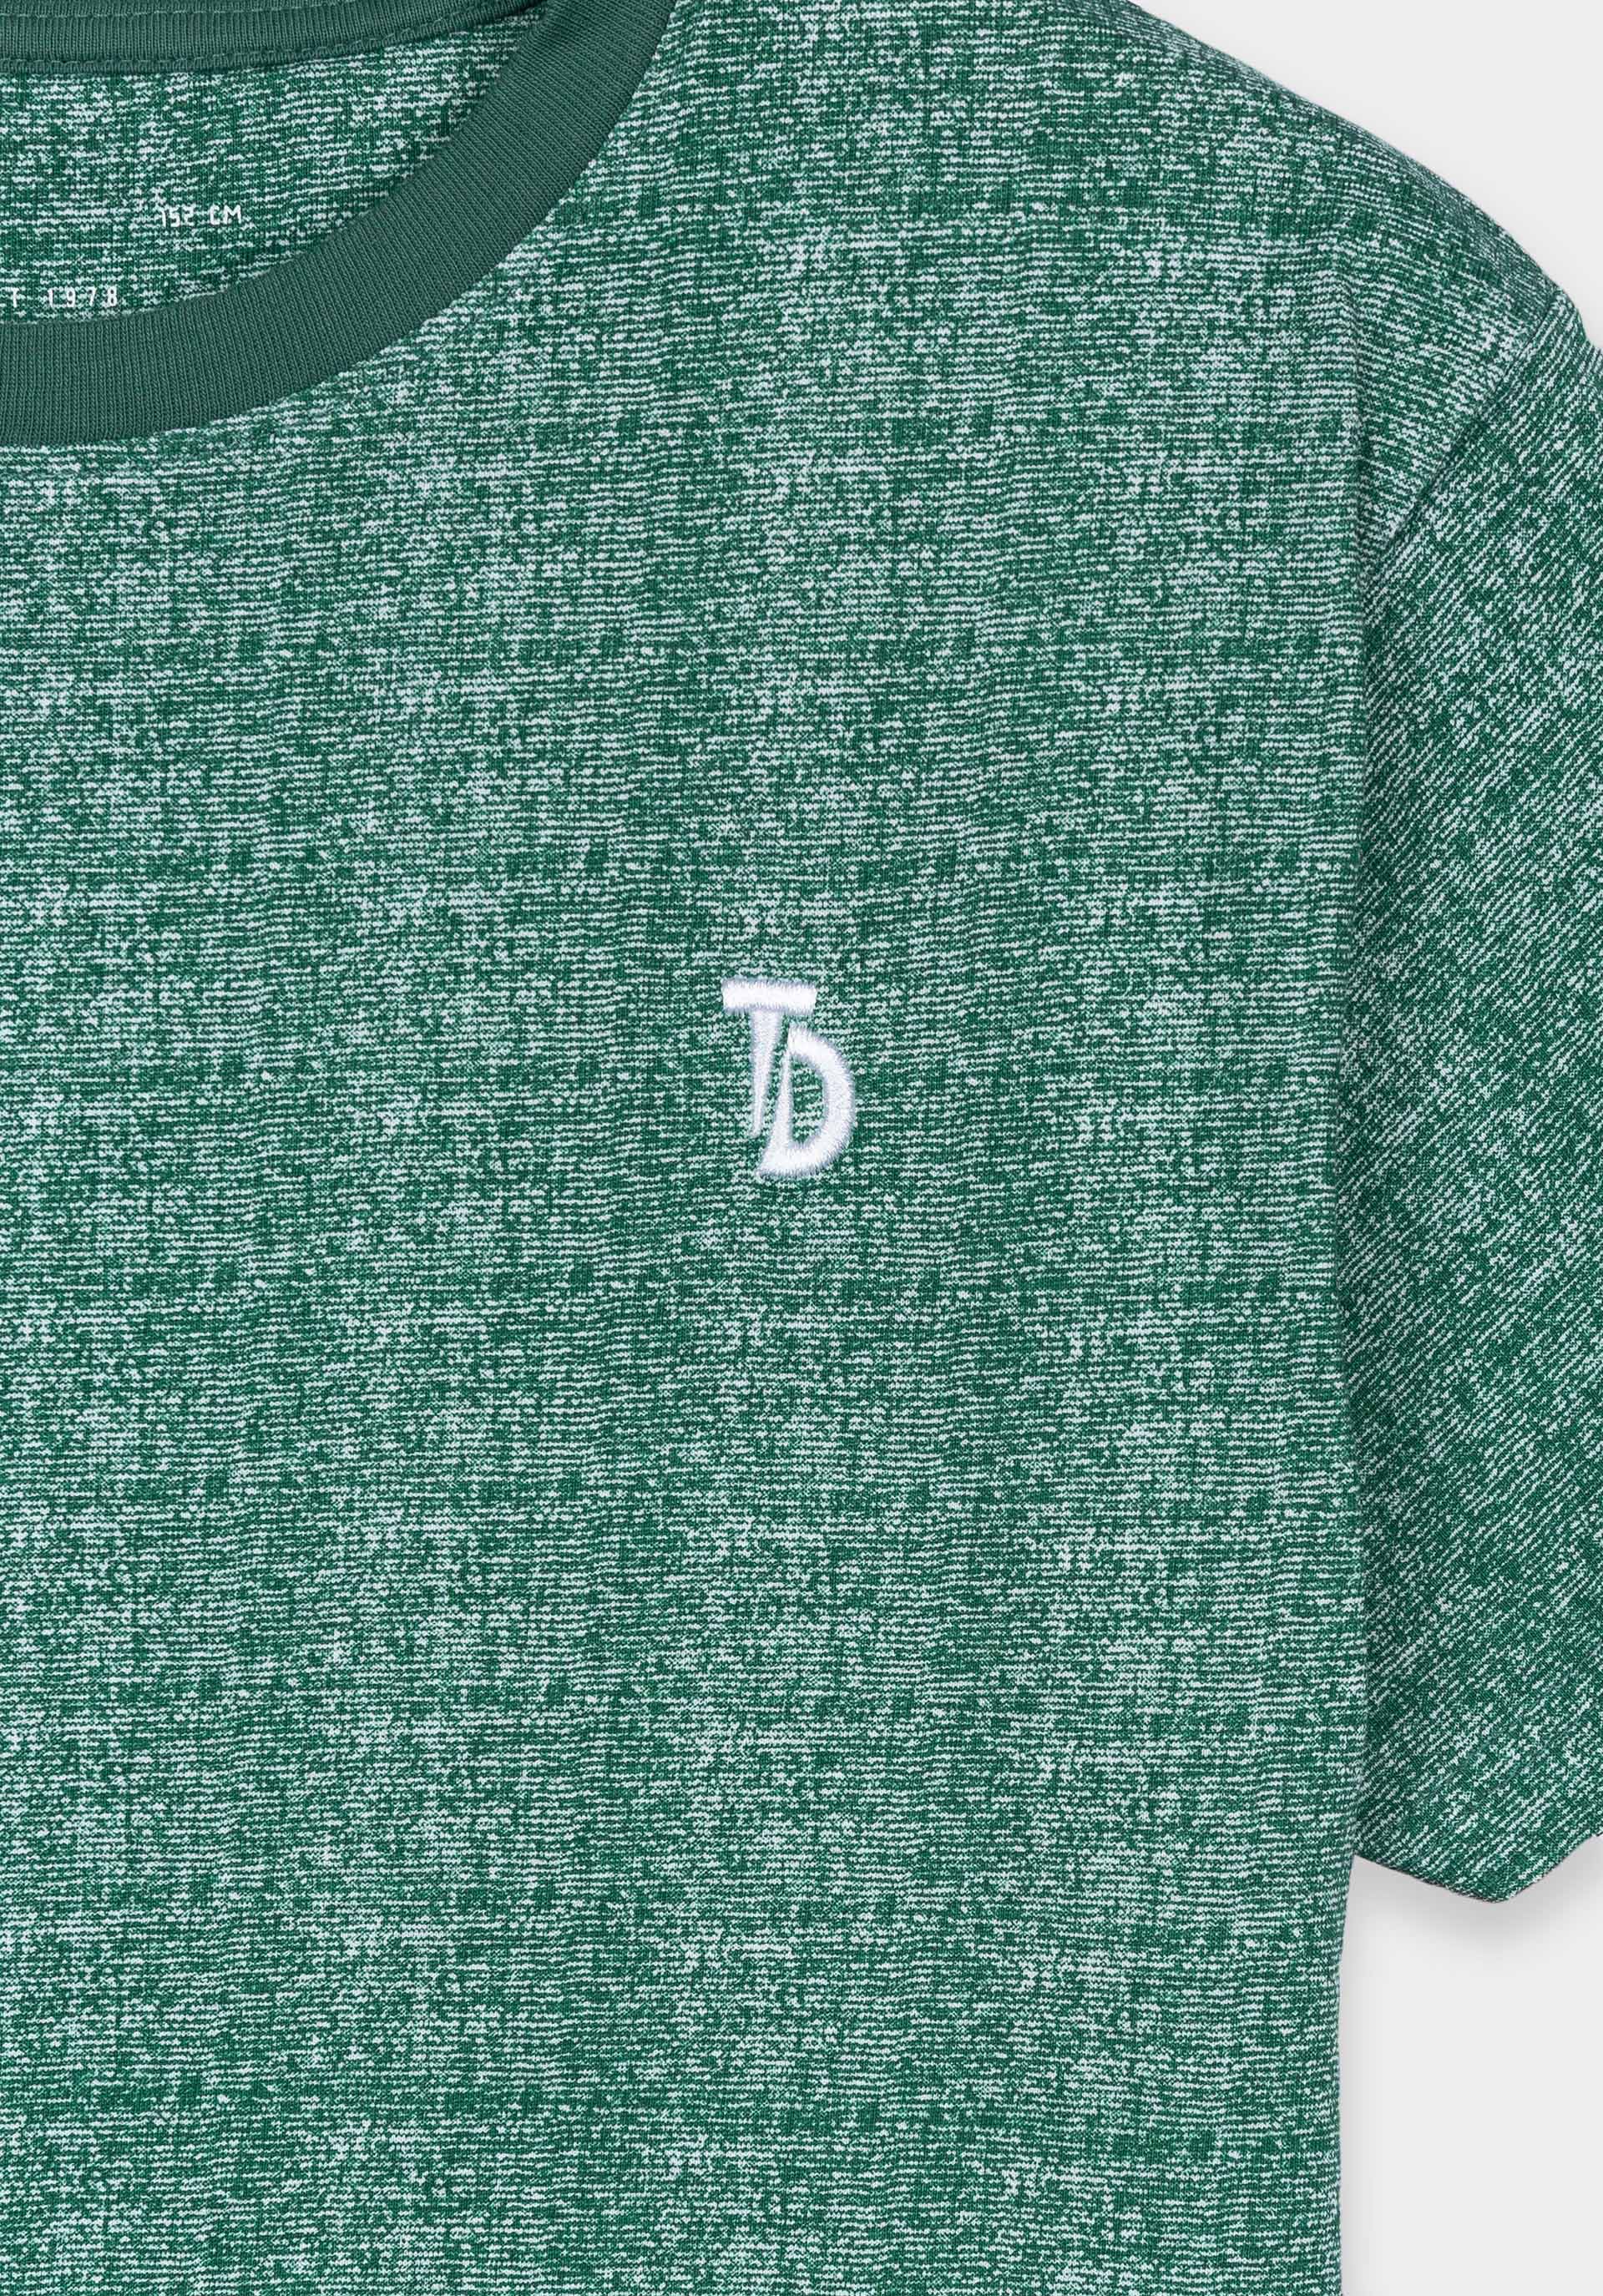 Tiffosi T-Shirt groen